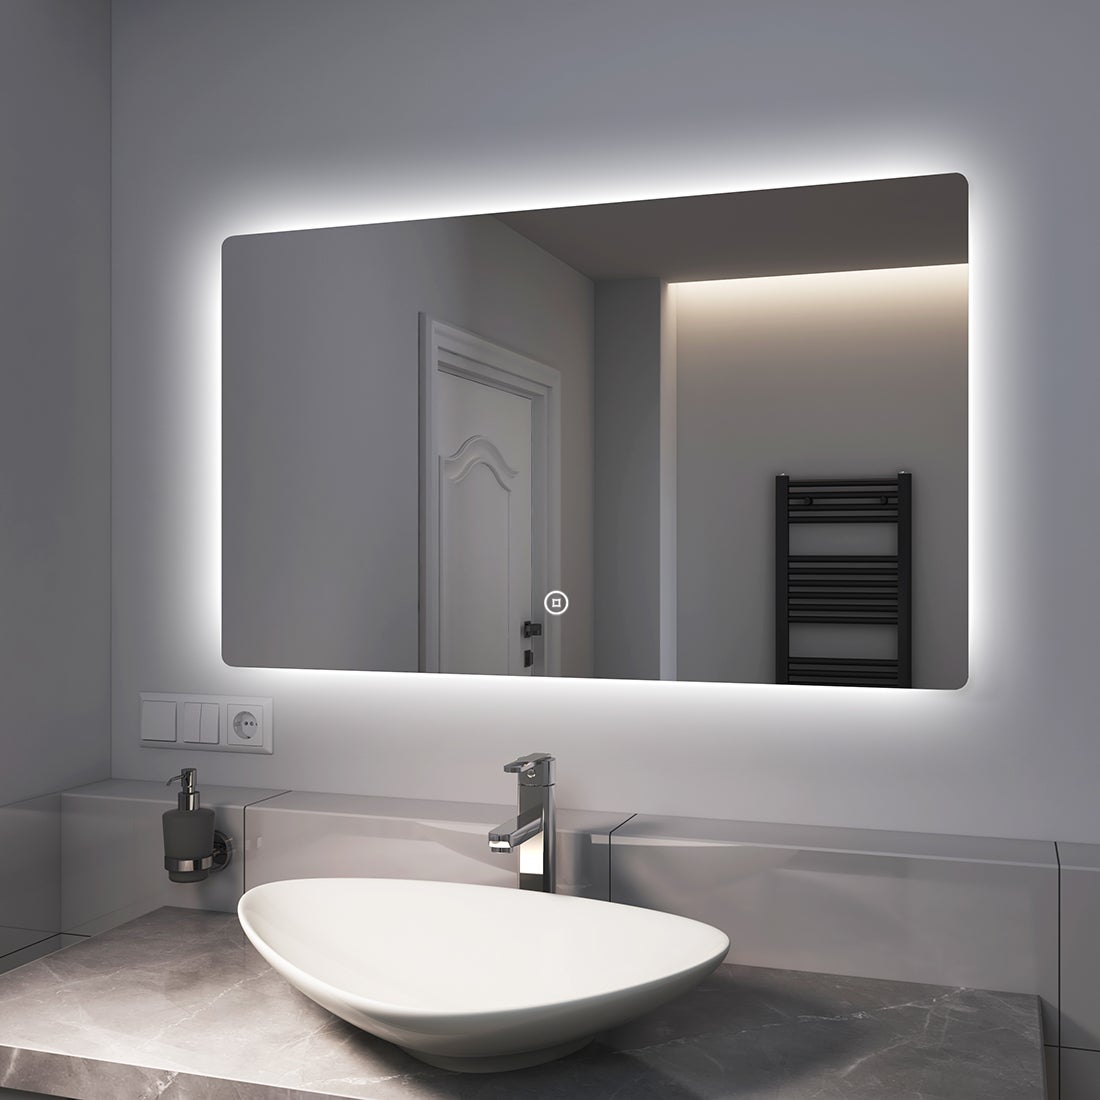 EMKE Badspiegel LED 100x60cm, Kaltweißer Beleuchtung, Touch-schalter, Dimmbar